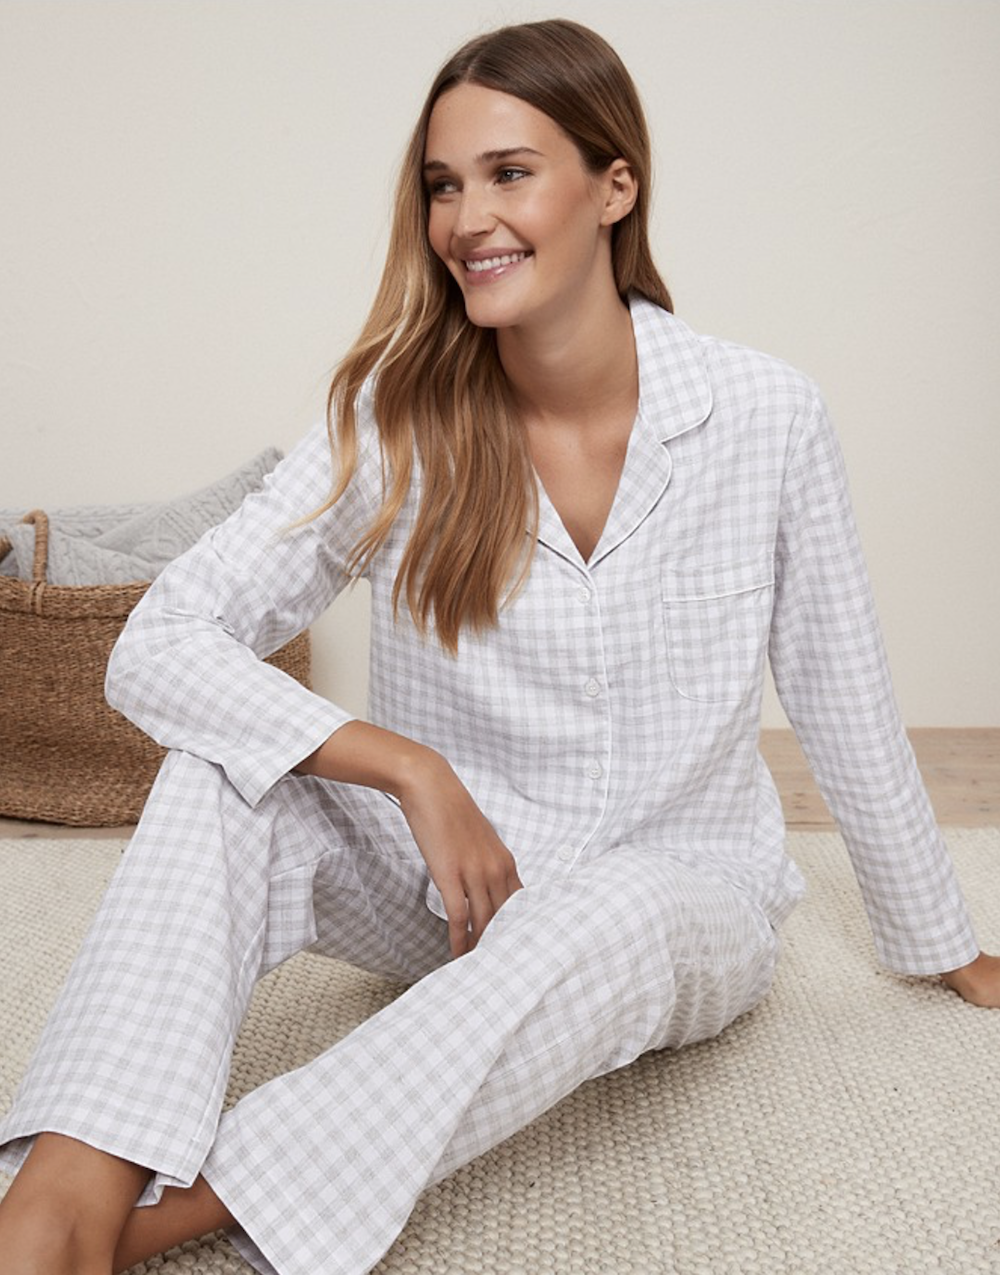 M&H toppliste: 8 fine pysjamaser til juleferien